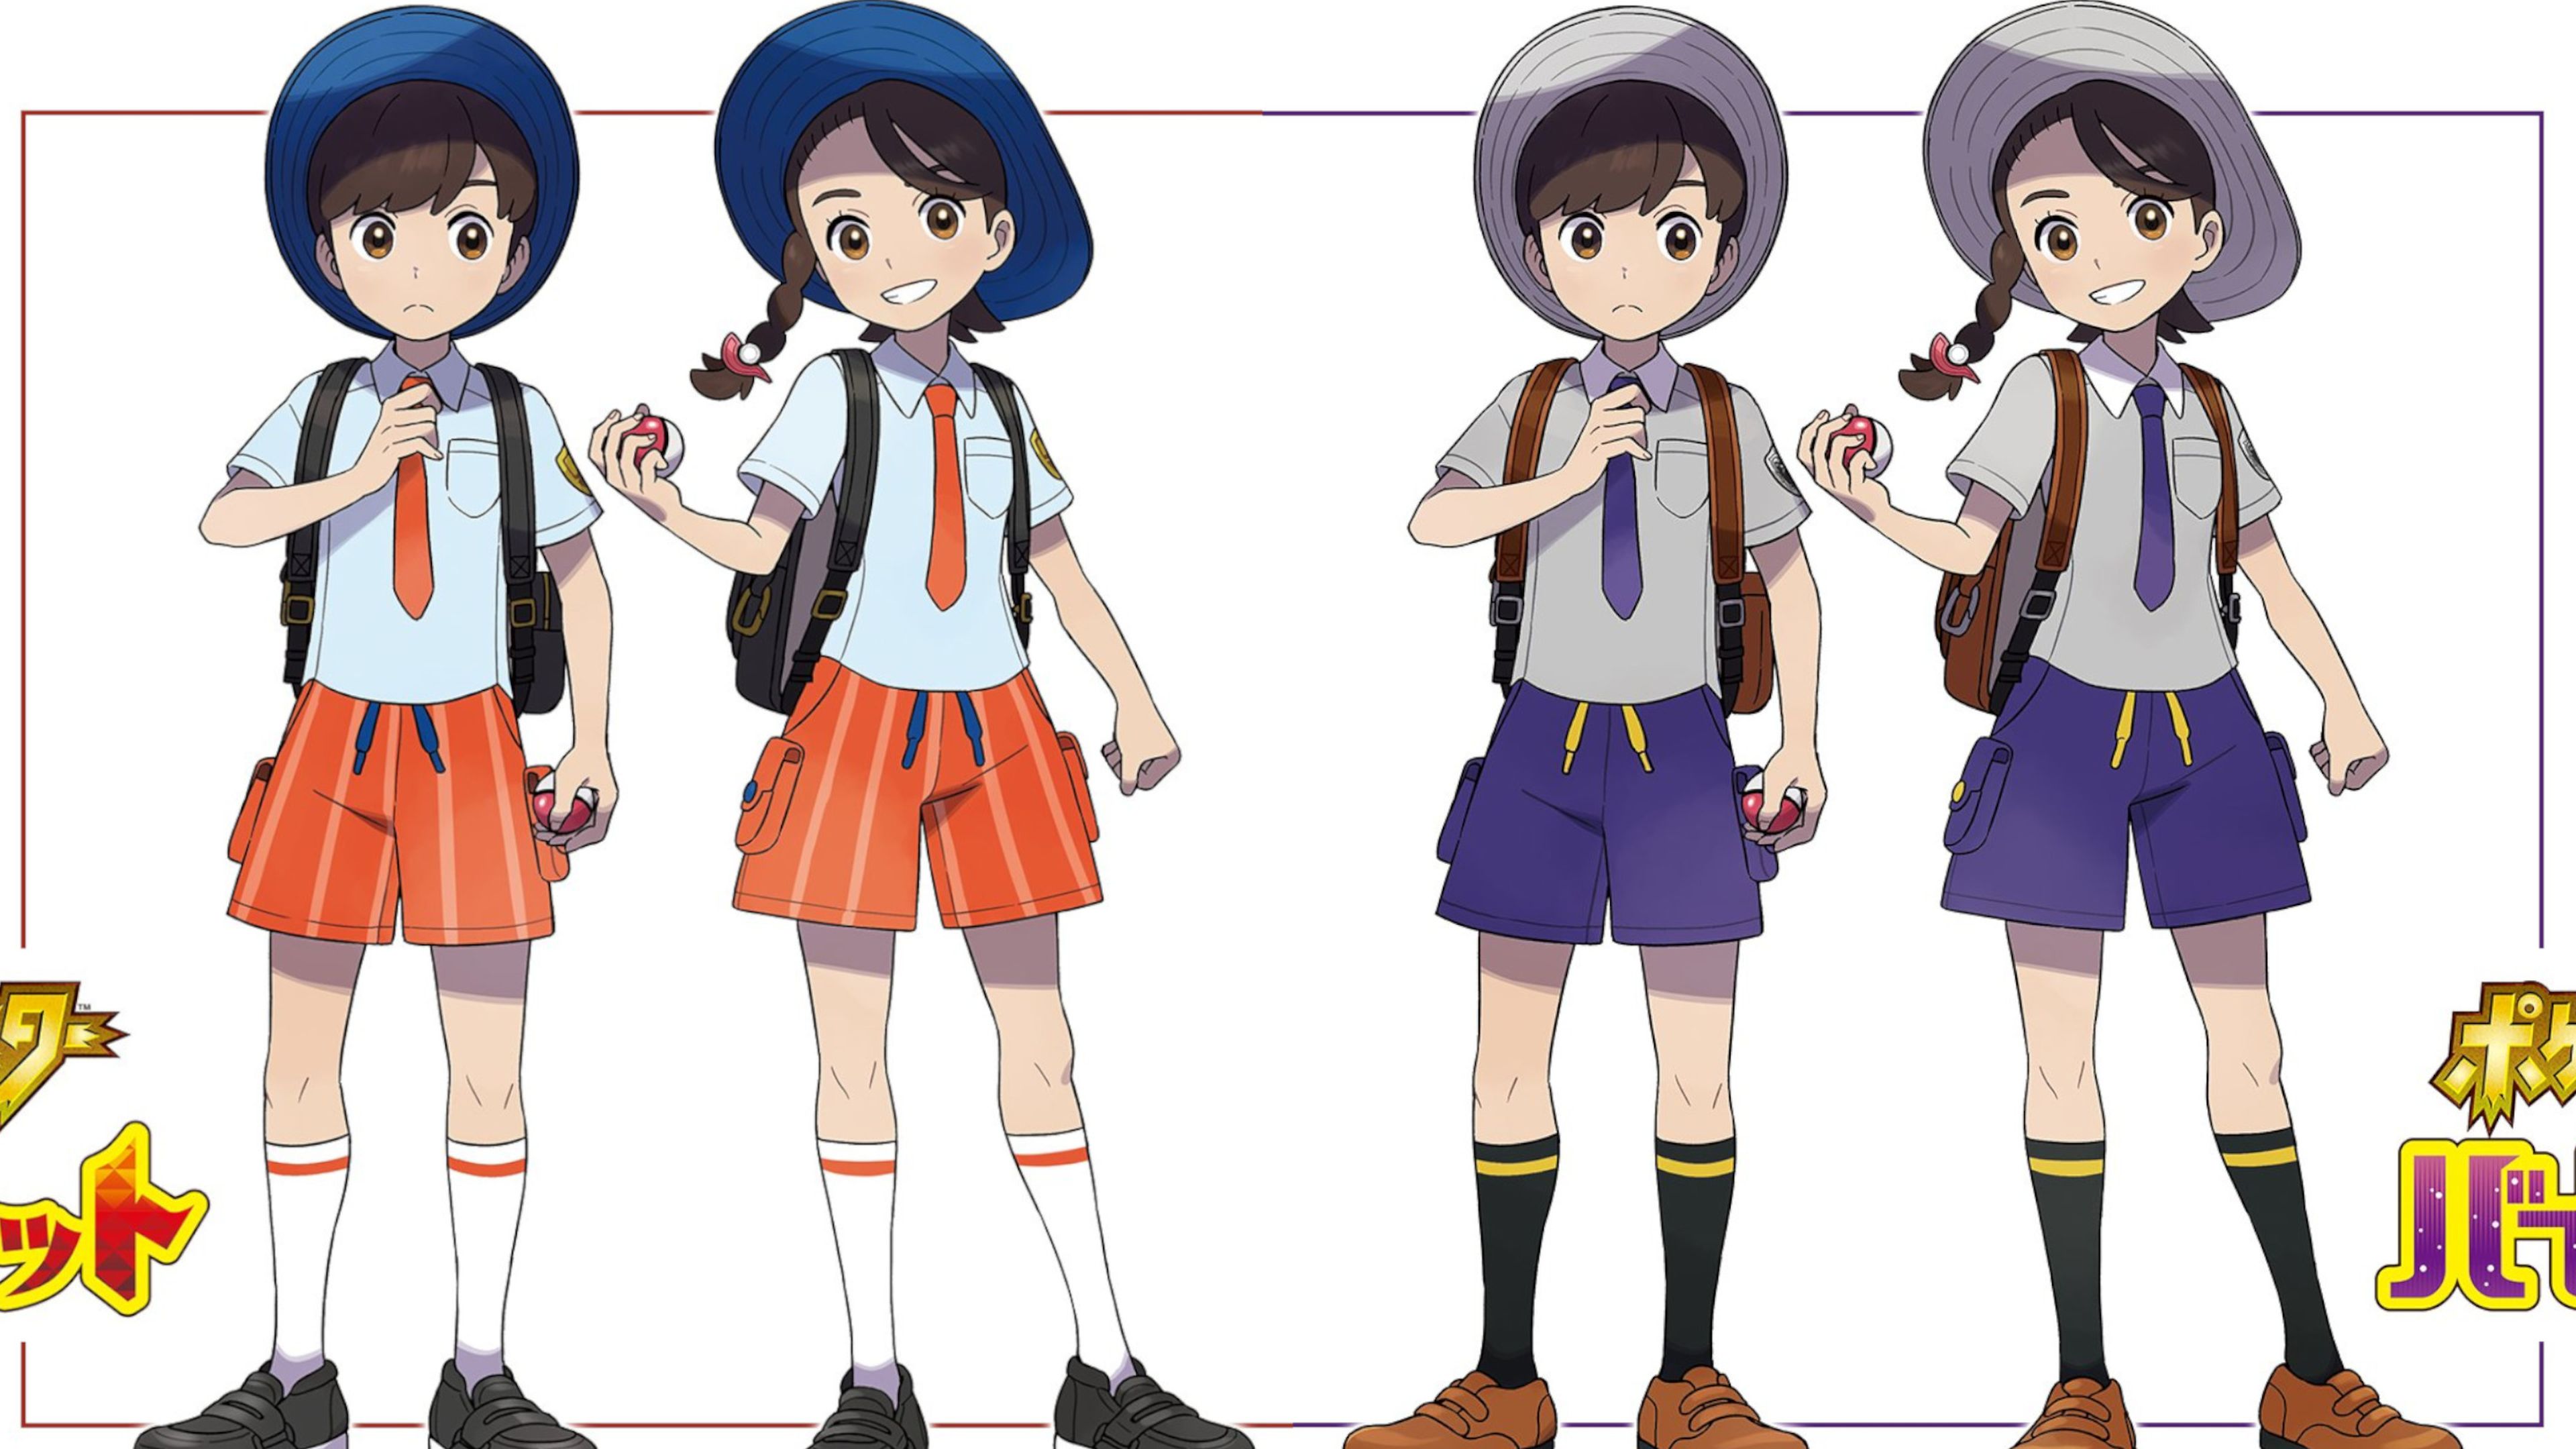 Pokémon Escarlata y Púrpura: Cómo personalizar tu personaje y comprar ropa